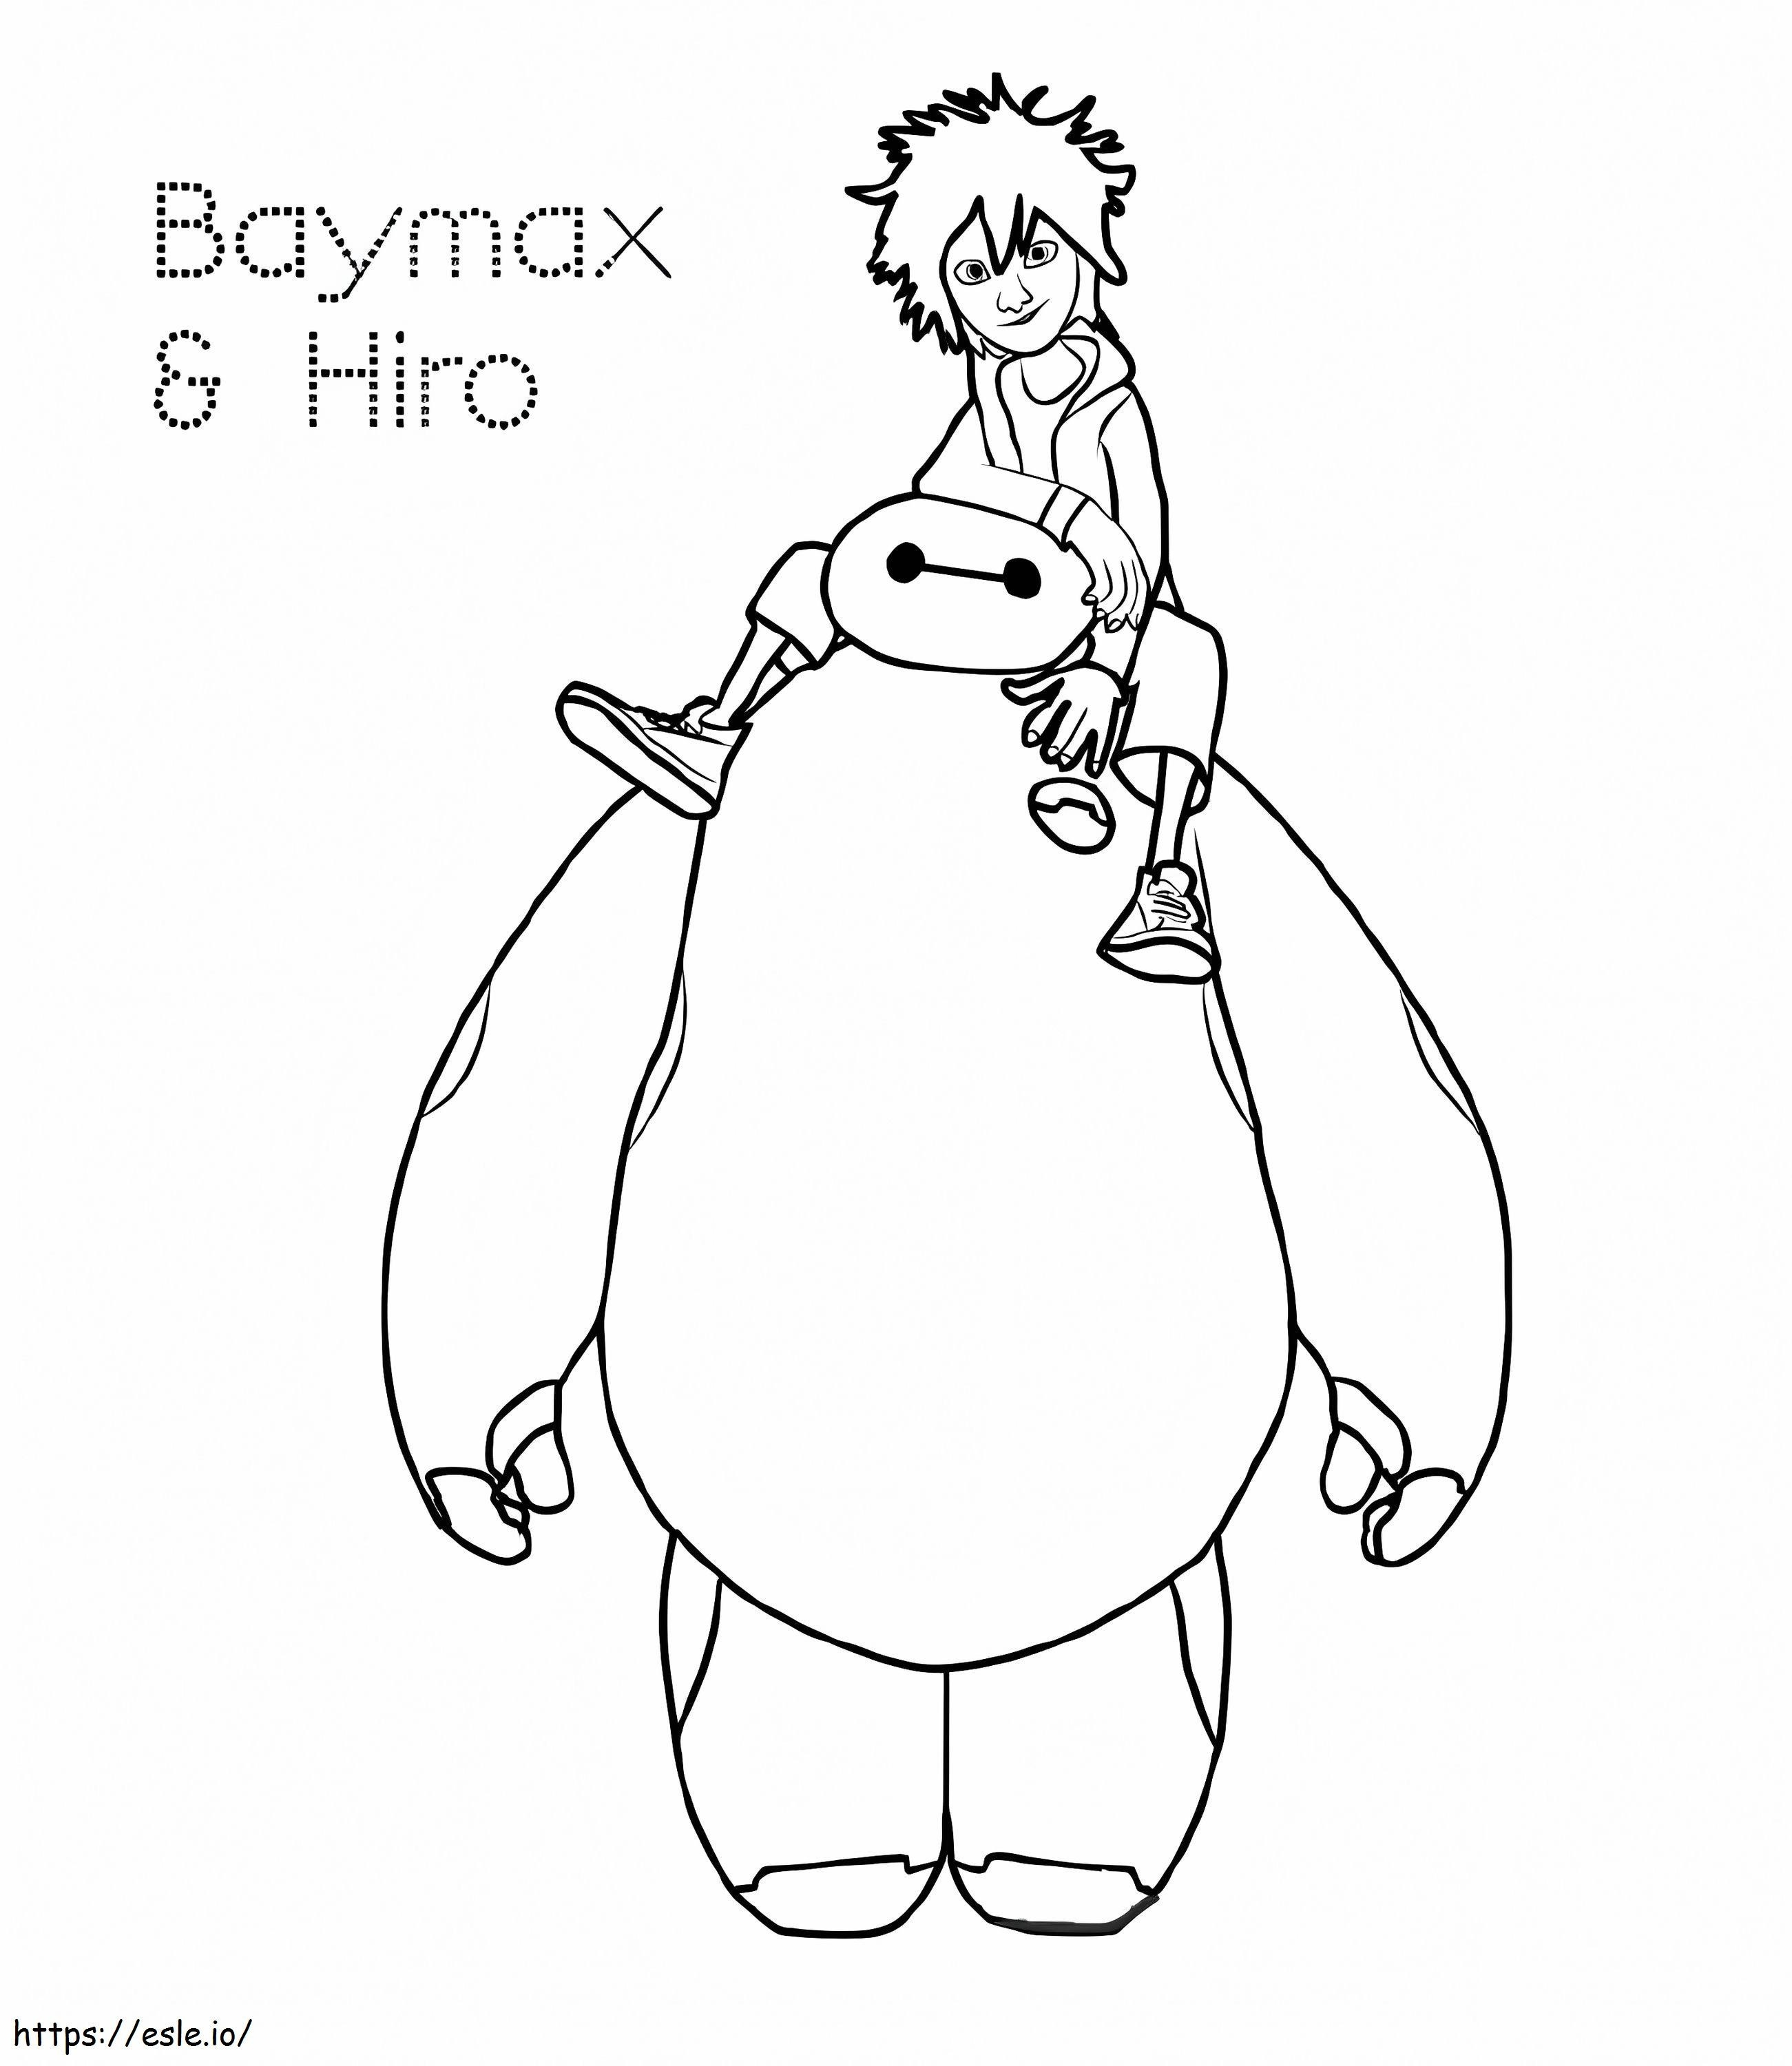 Hiro And Baymax coloring page